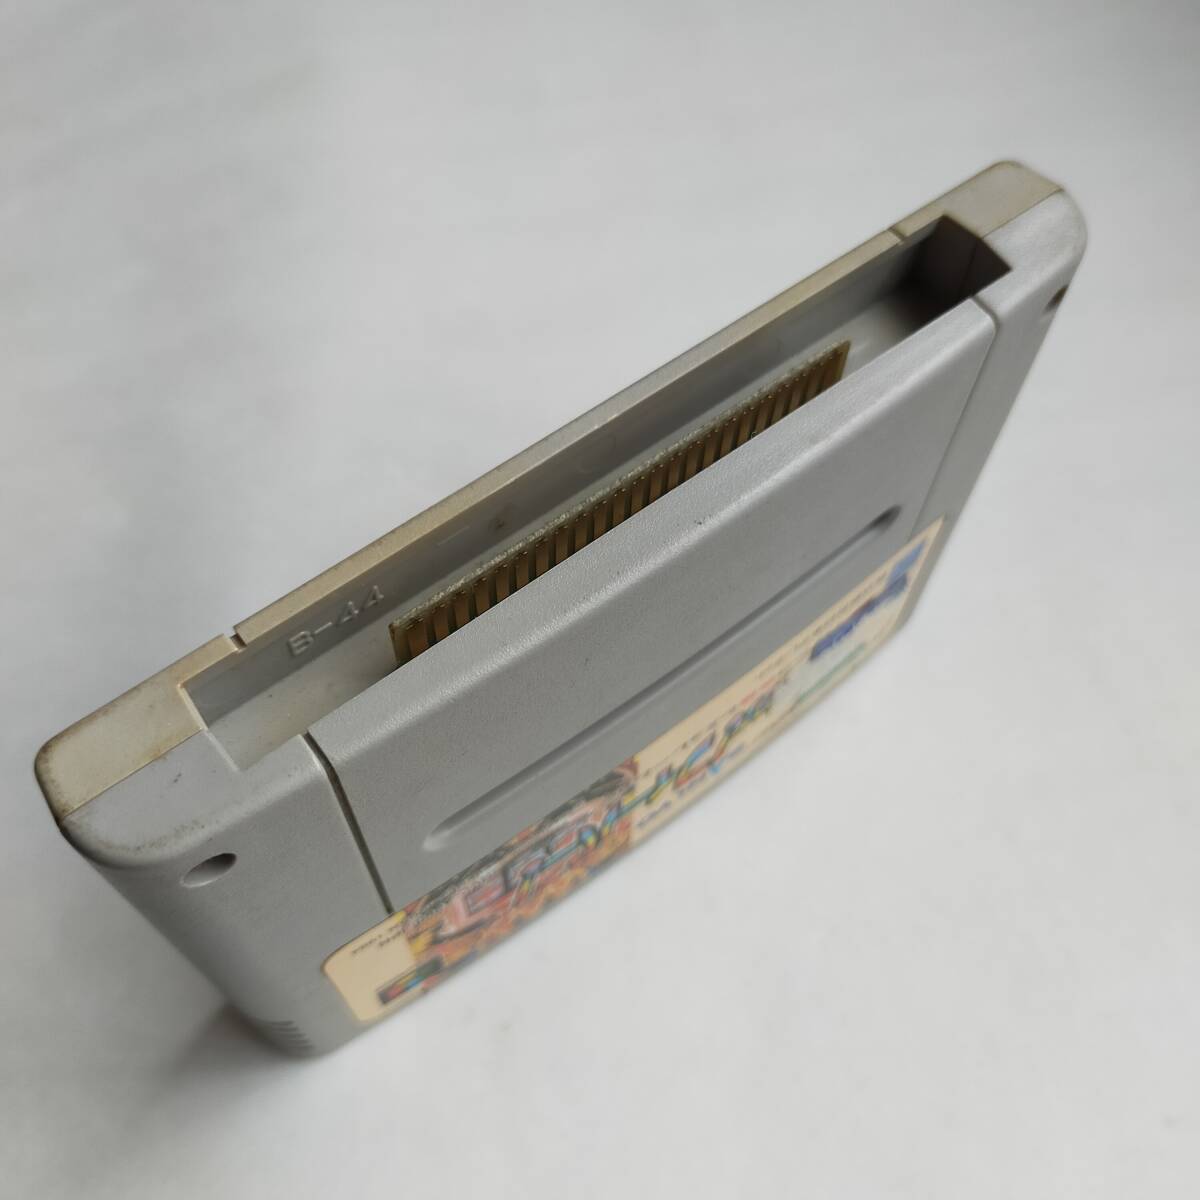 SANKYOfi- балка fi- балка Super Famicom рабочее состояние подтверждено * терминал чистка settled [SFC5565_425]